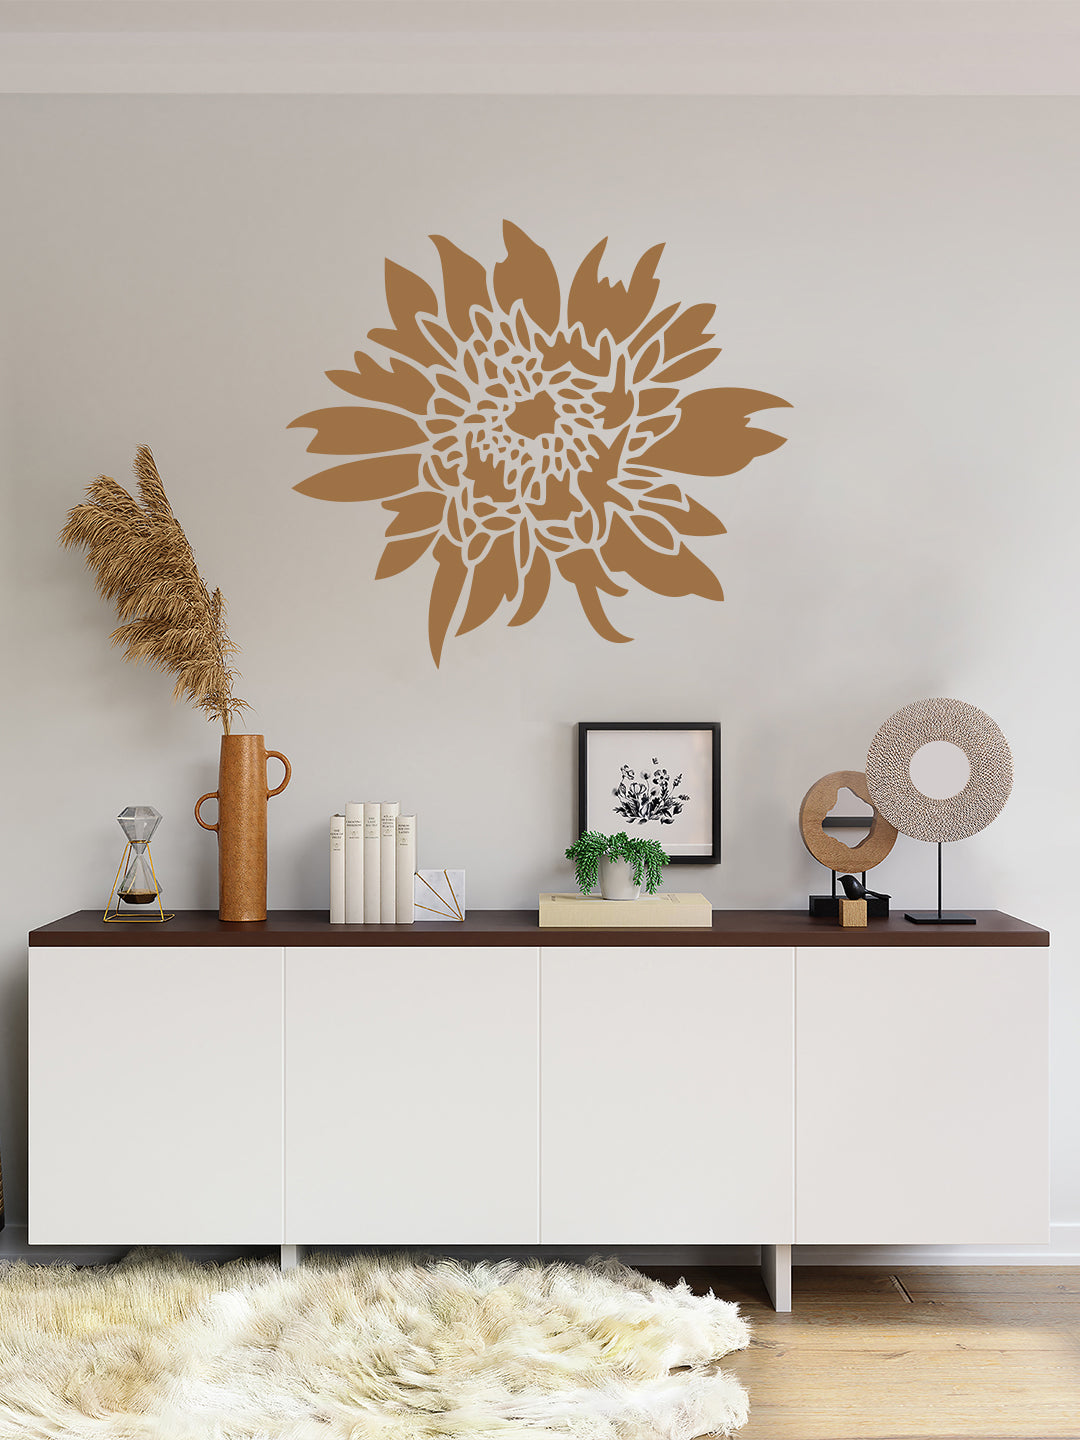 Chrysanthemum Flower Design Wall Stencils